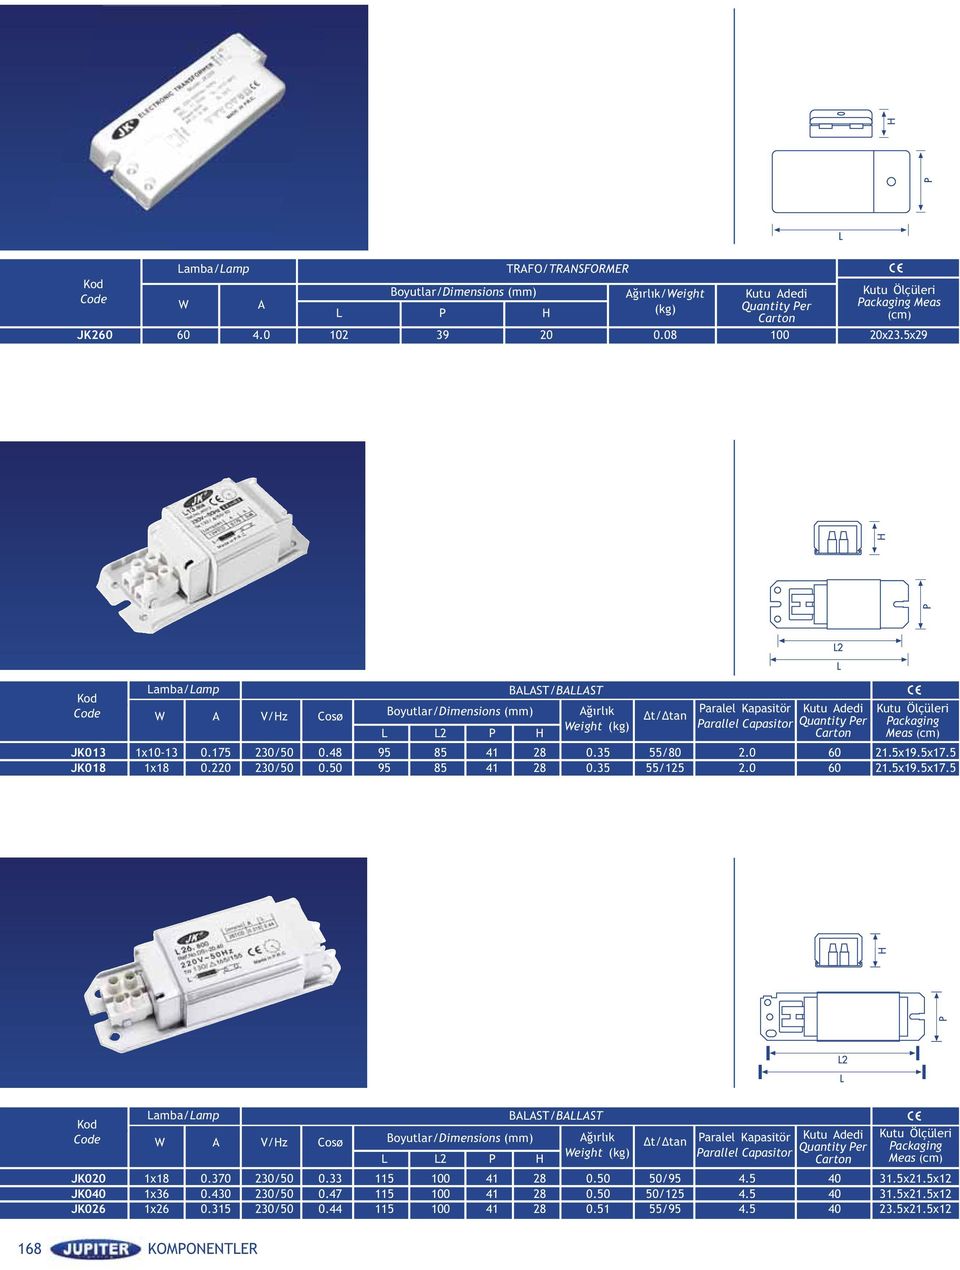 35 Δt/Δtan 55/80 55/125 Paralel Kapasitör Parallel Capasitor 2.0 2.0 Kutu Adedi Quantity Per Carton 60 60 Kutu Ölçüleri Packaging Meas (cm) 21.5x19.5x17.